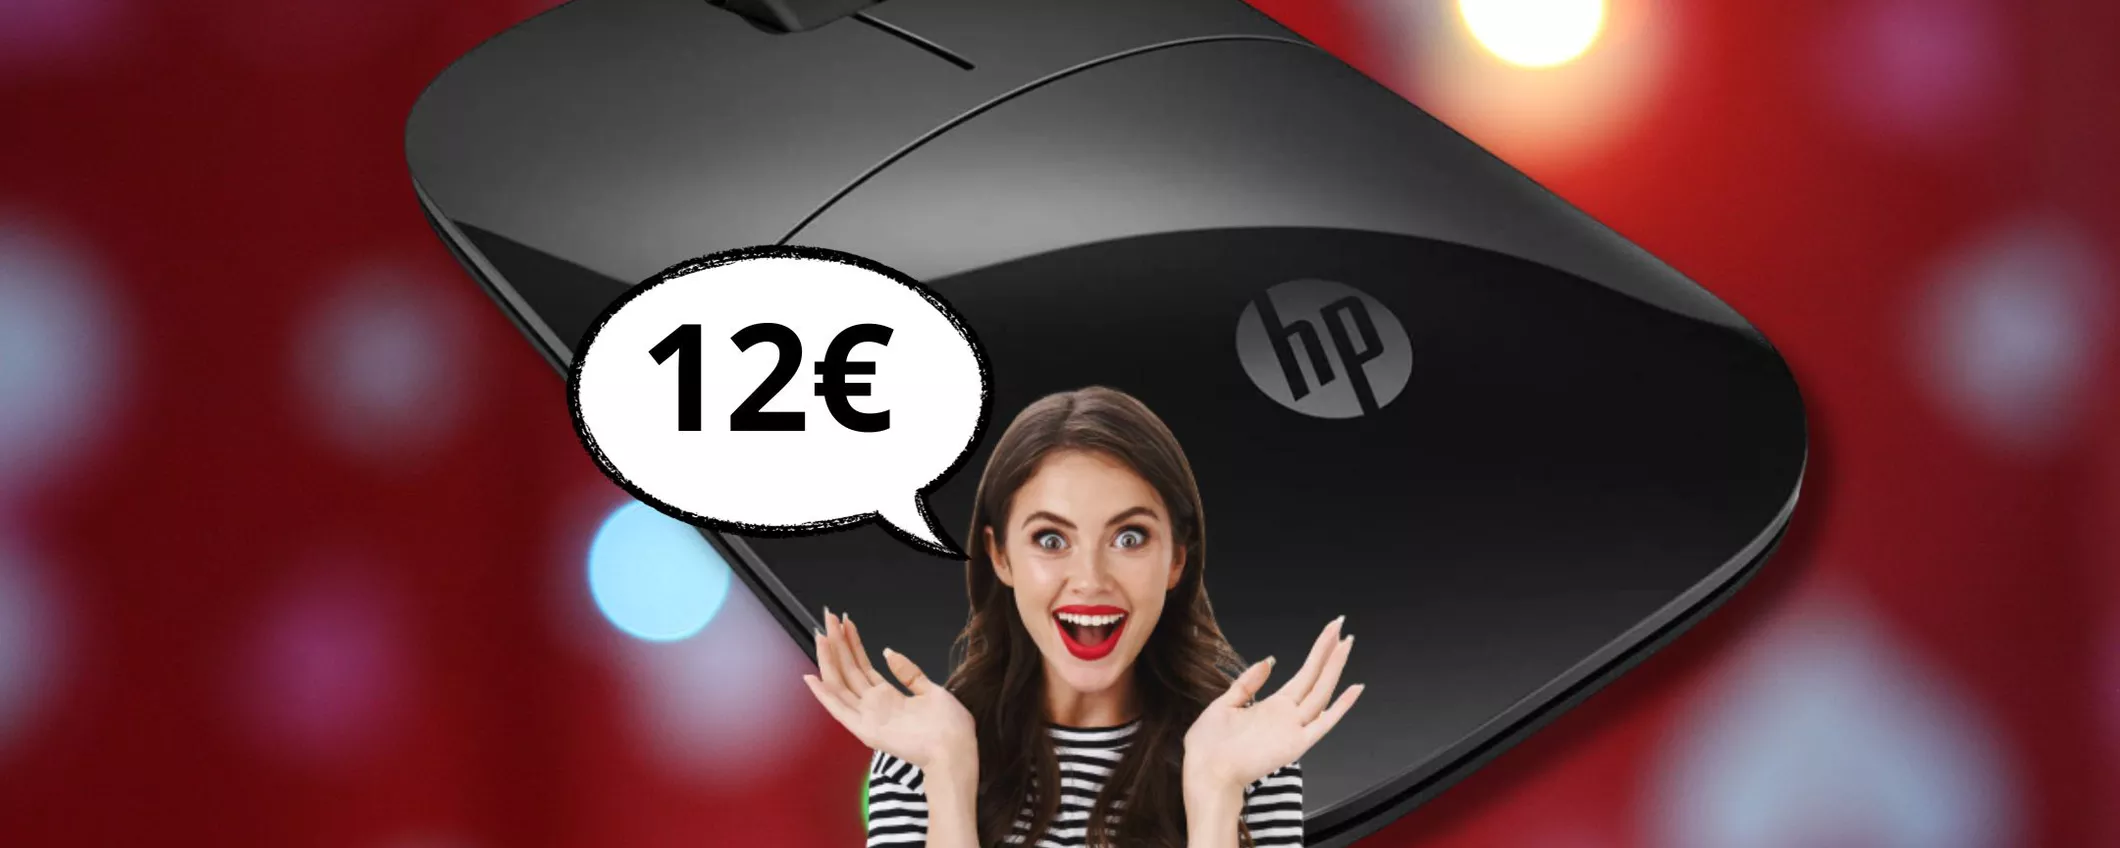 Carbone nella calza? Rifatti con questo mouse Hp wireless per Pc a soli 12 euro!